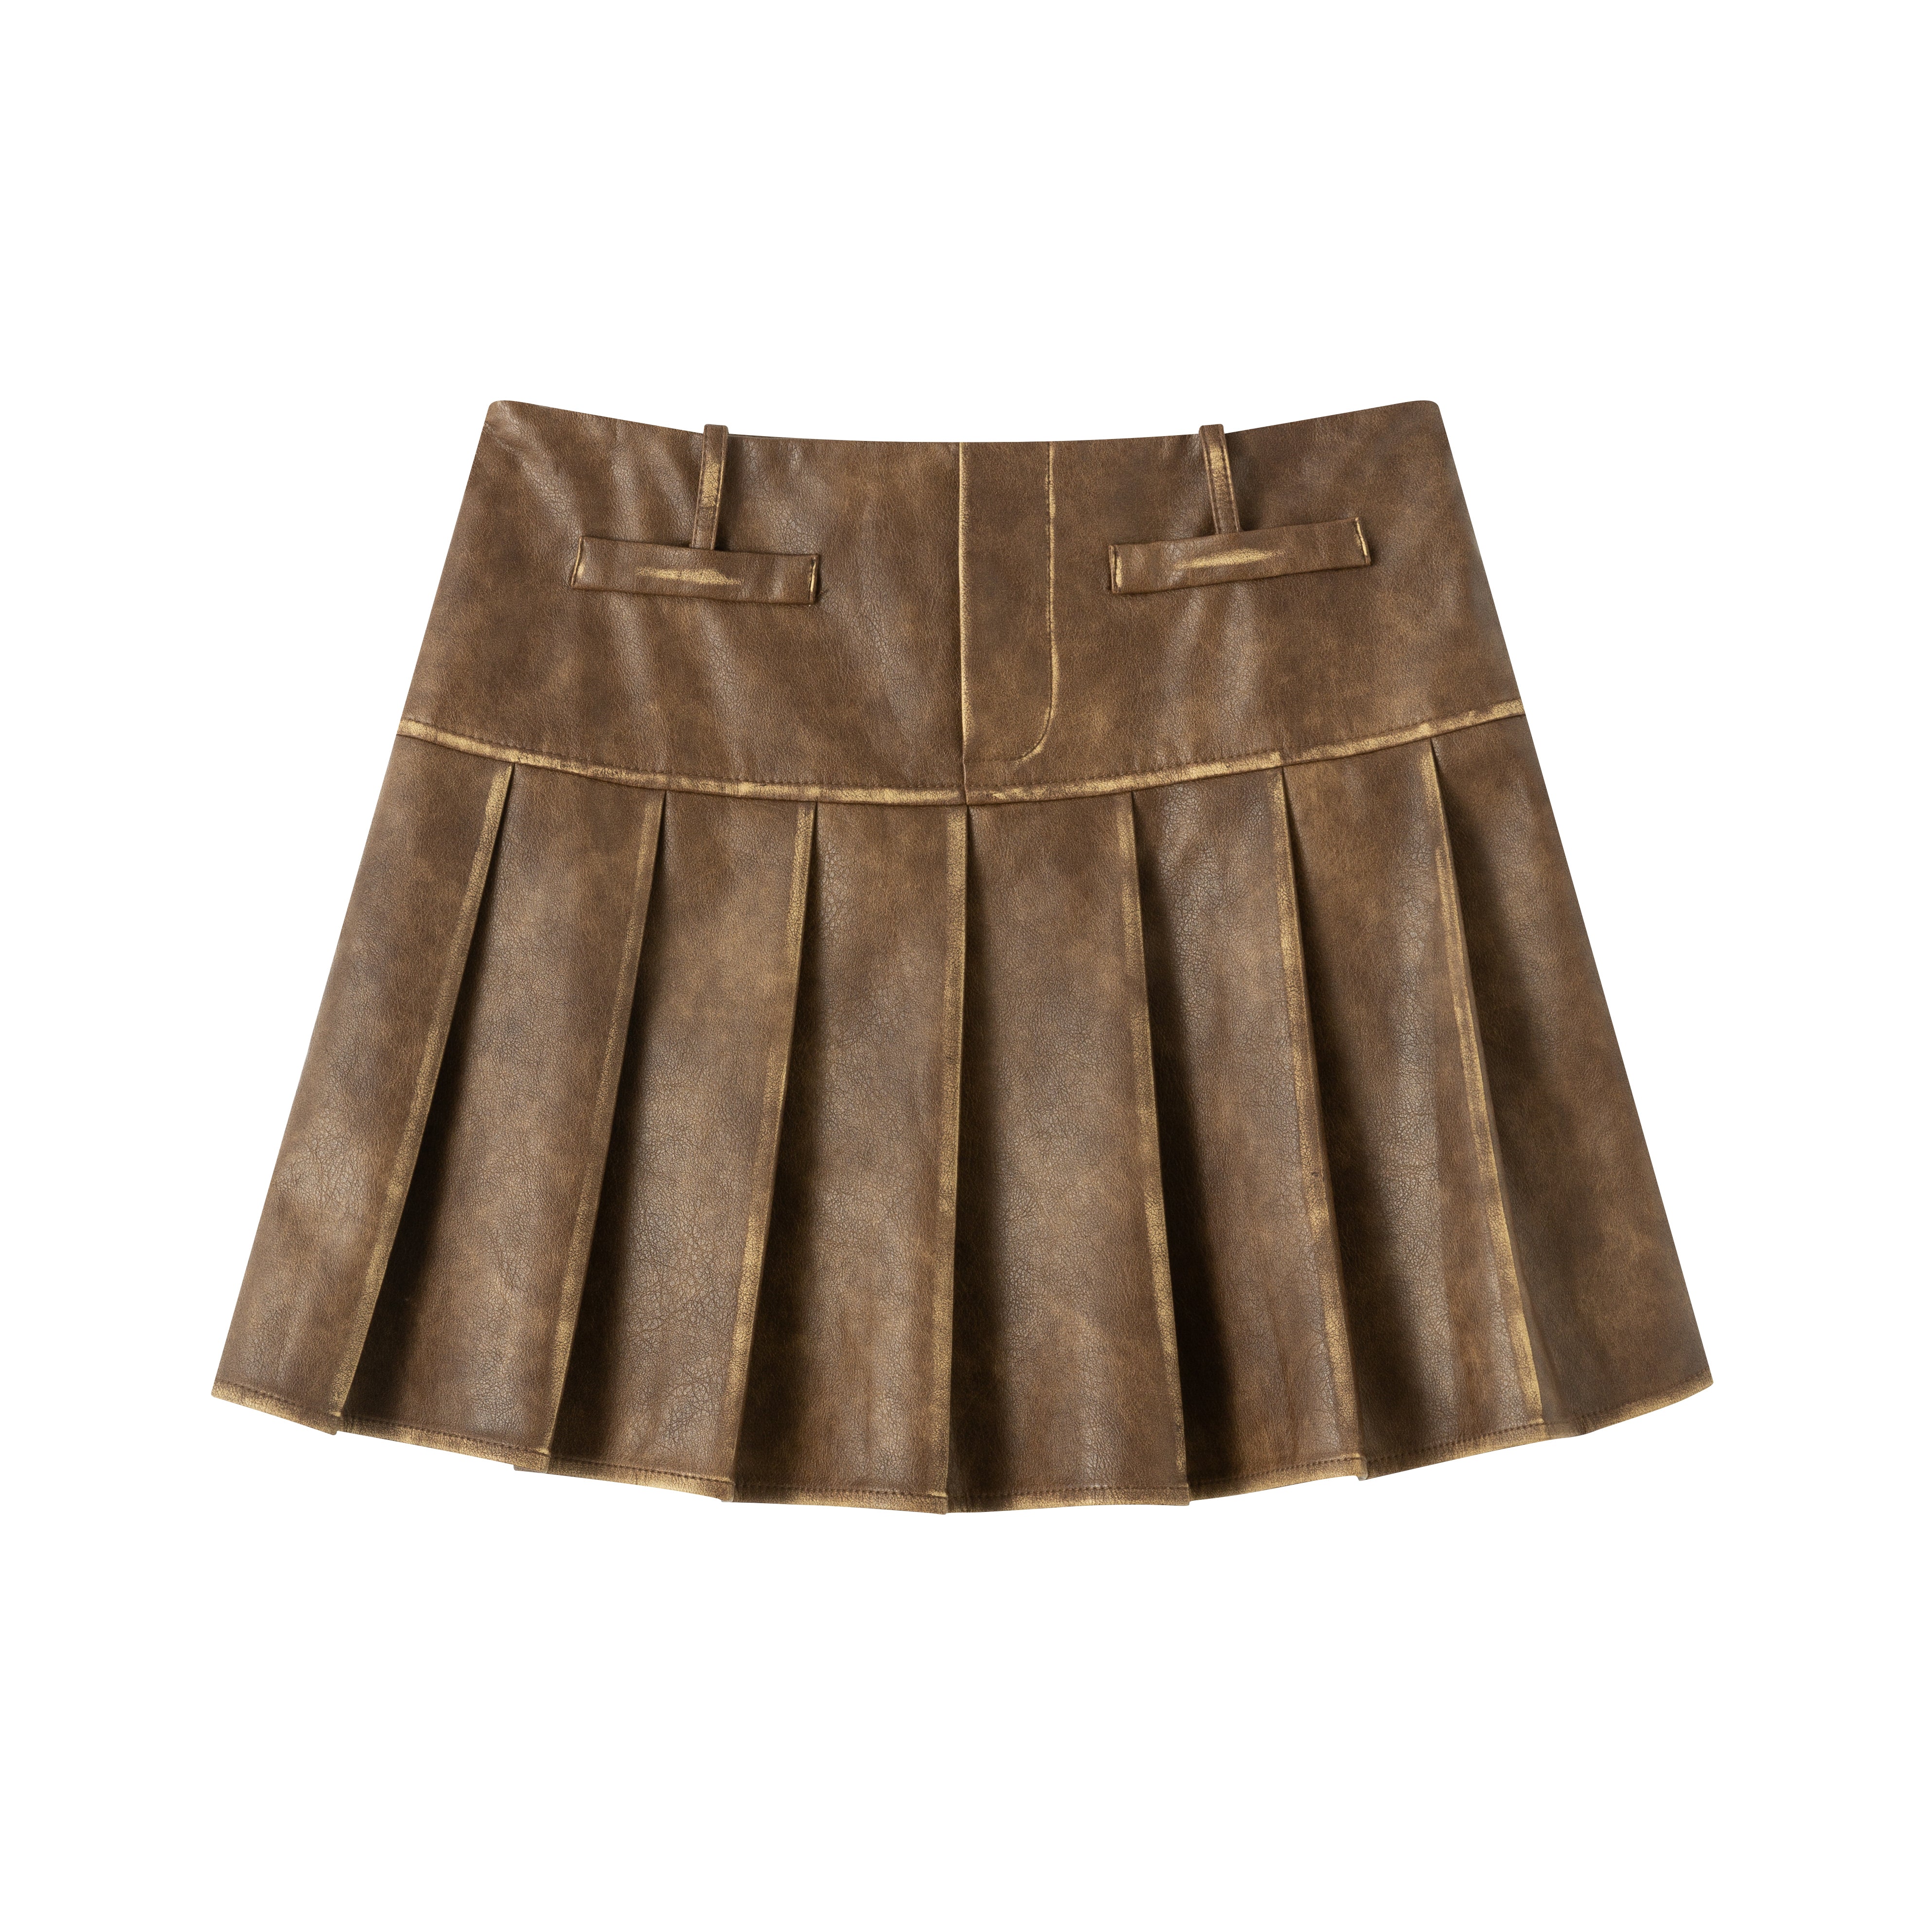 Distressed pleated mini skirt